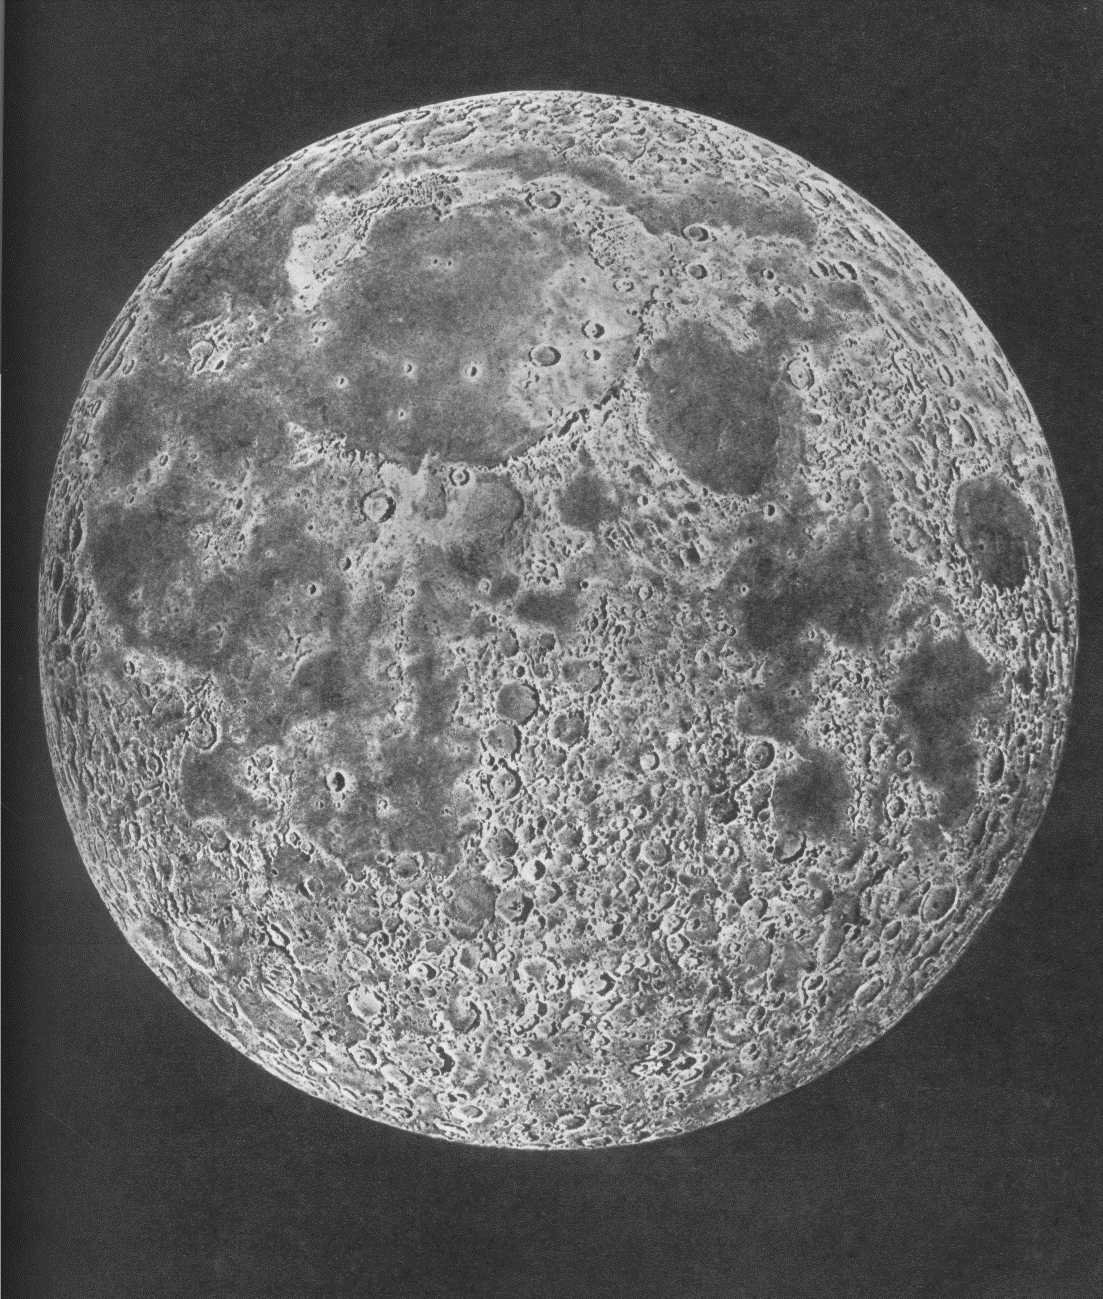 Видной части луны. Невидимая сторона Луны. Обратная сторона Луны. Луна снимок обратной стороны Луны. Обратная Невидимая сторона Луны.